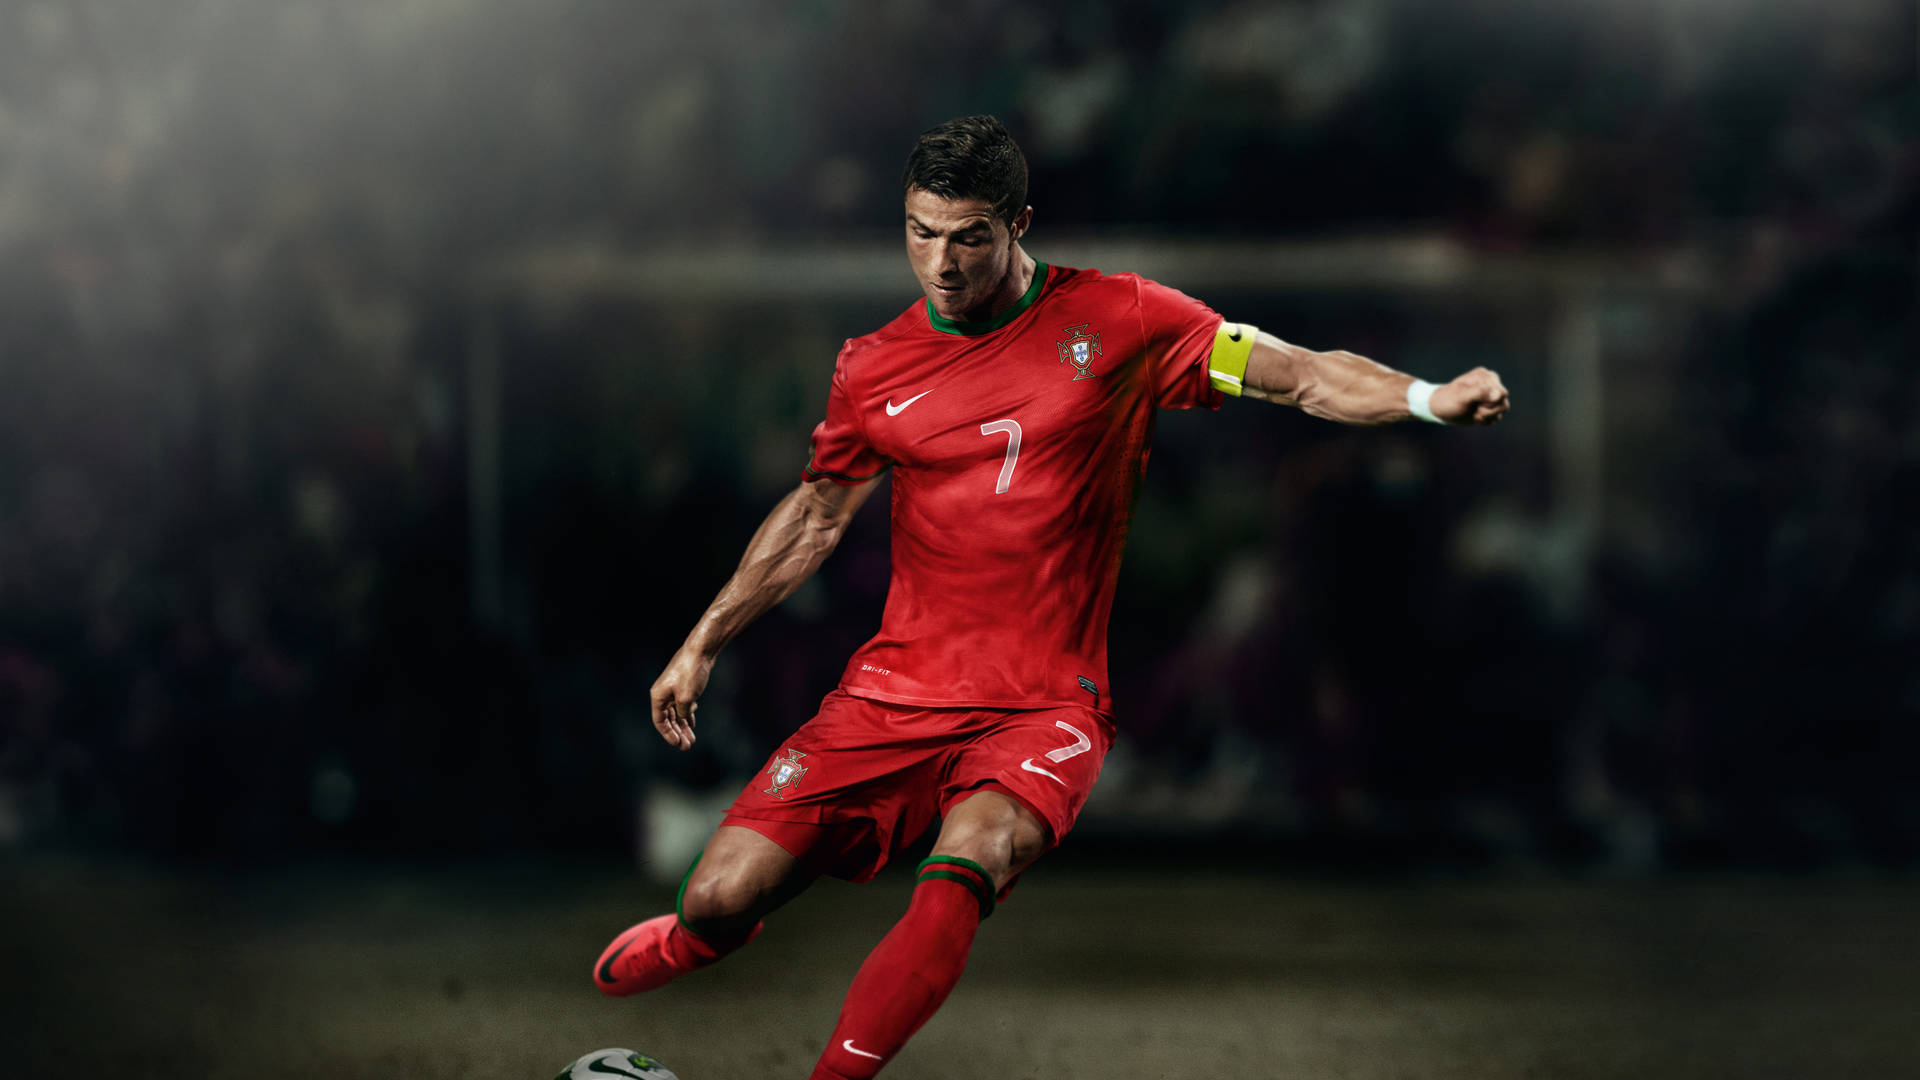 Coolefußball-desktop Ronaldo Beim Kicken Wallpaper